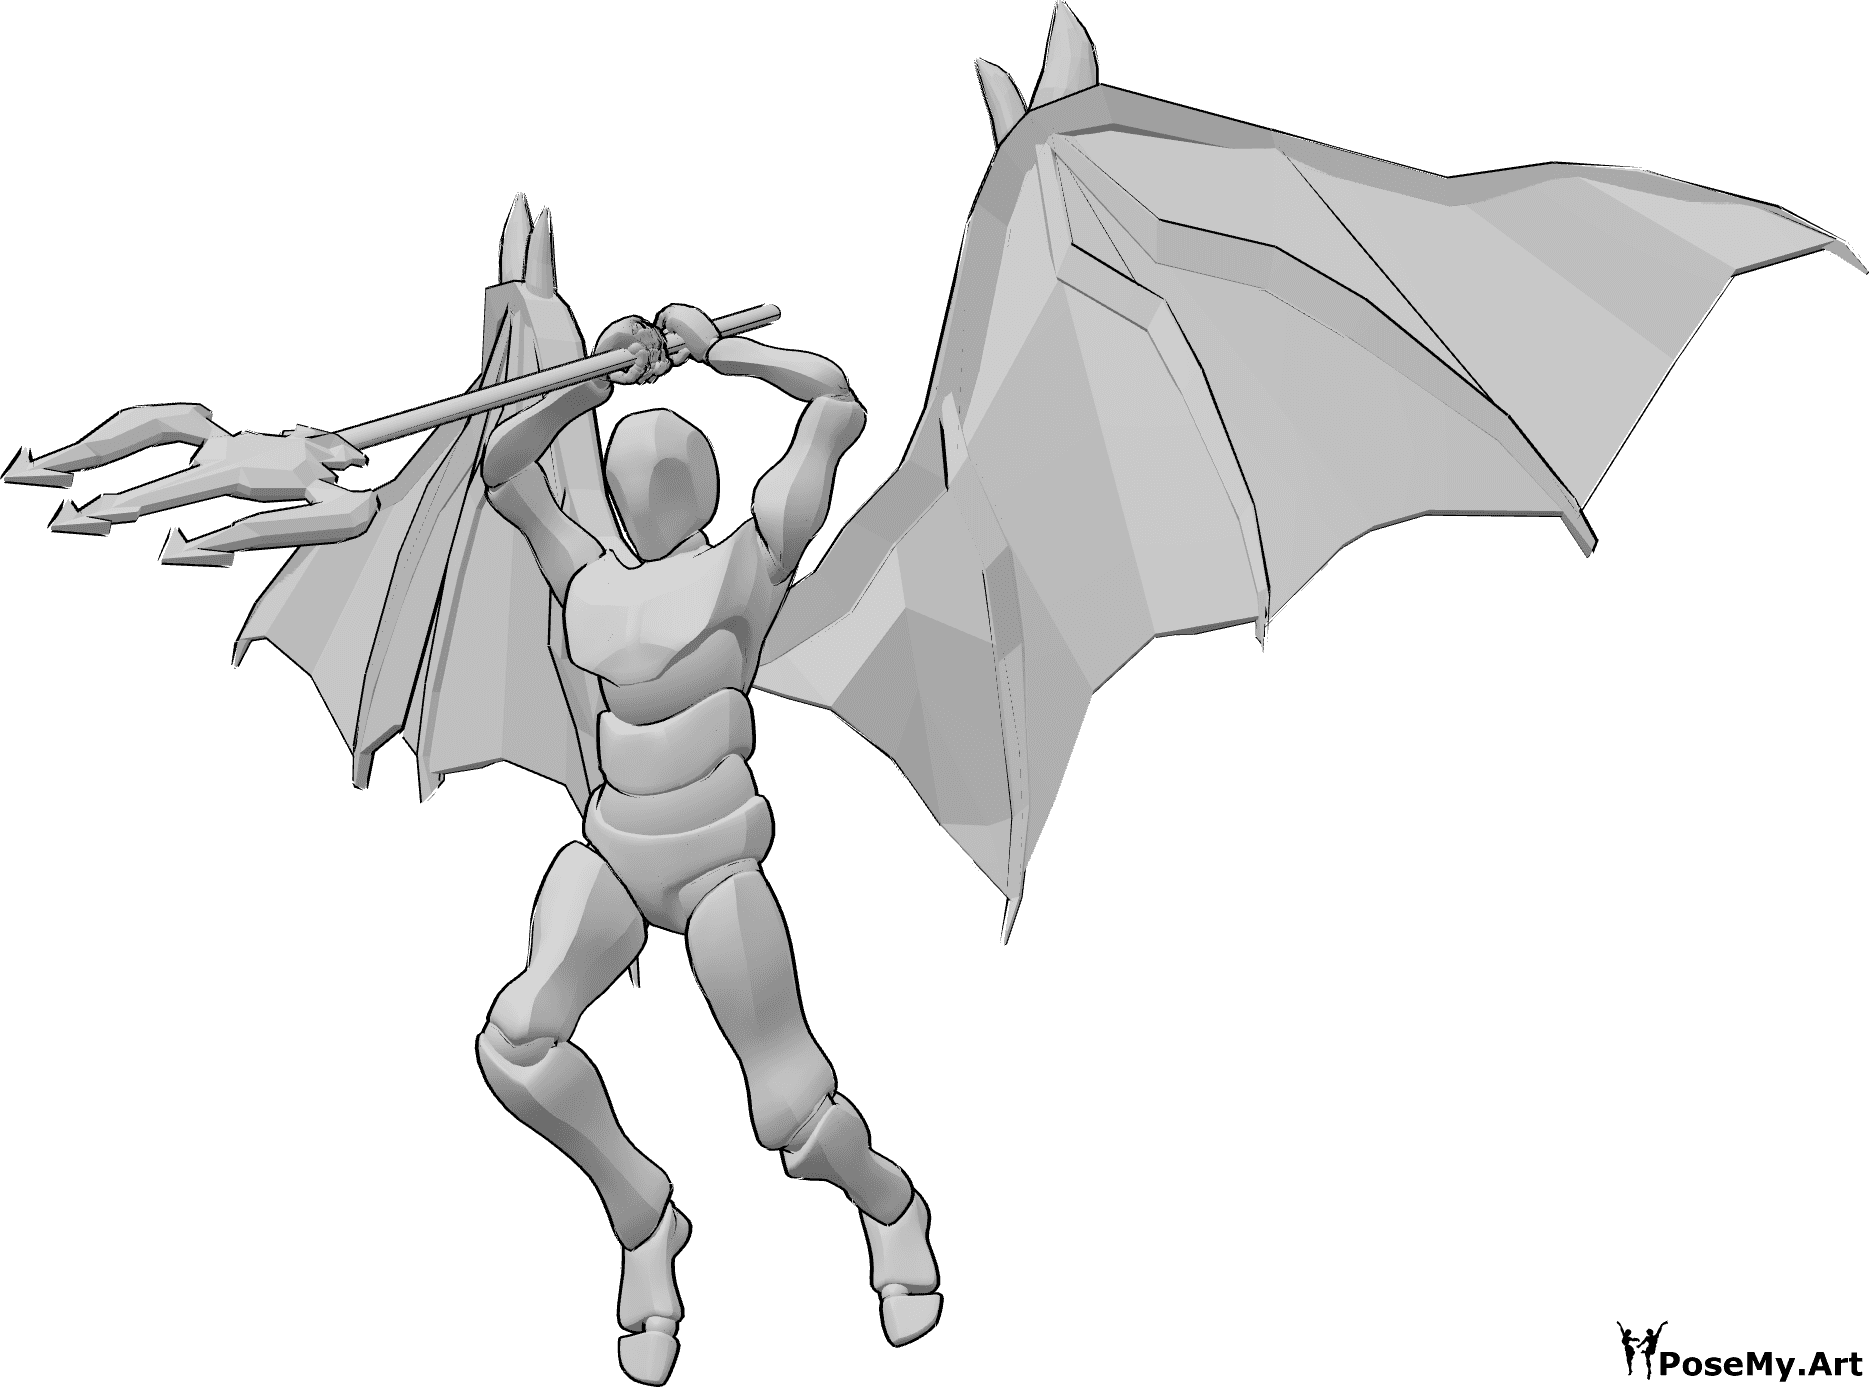 Referência de poses- Pose dinâmica de ataque do demónio - Homem com asas de diabo salta alto para atacar, segurando o seu tridente com as duas mãos acima da cabeça